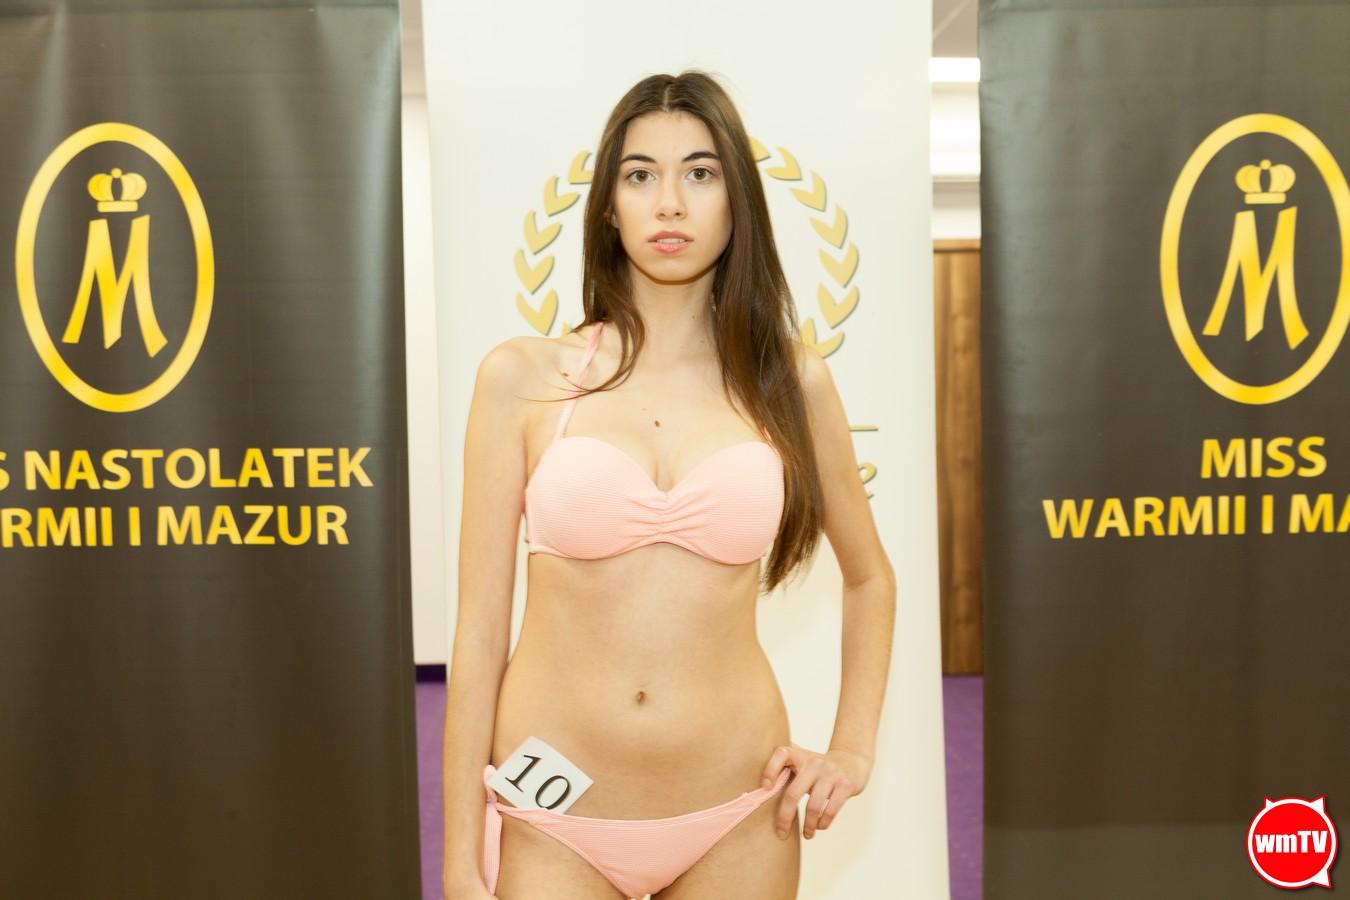 , Casting do Miss Warmii i Mazur 2019, Miss Warmii i Mazur, Miss Warmii i Mazur